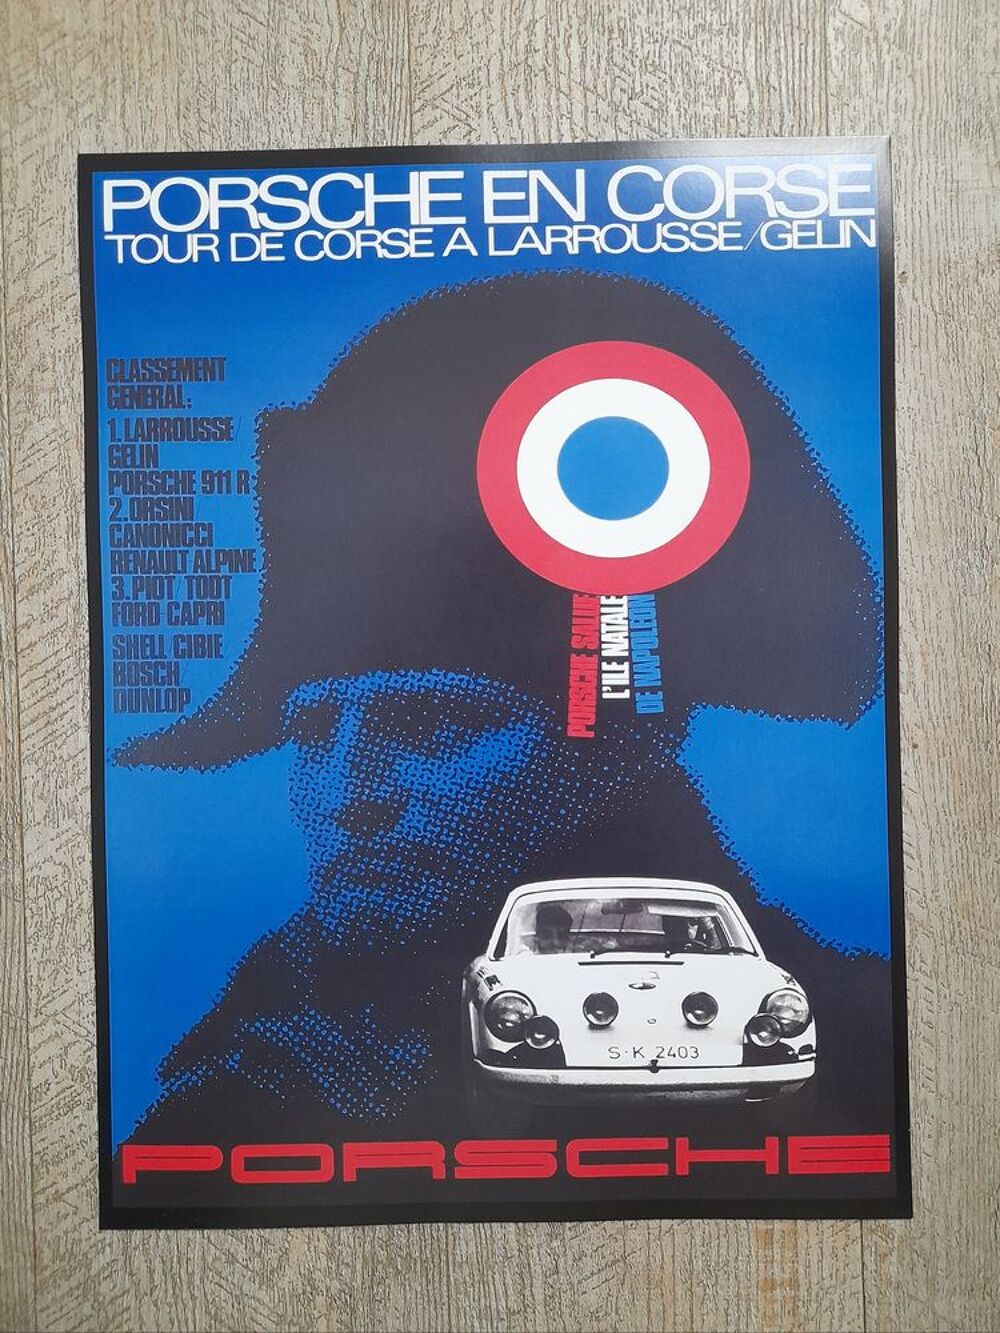 Porsche en corse - course automobile - affiche poster Dcoration